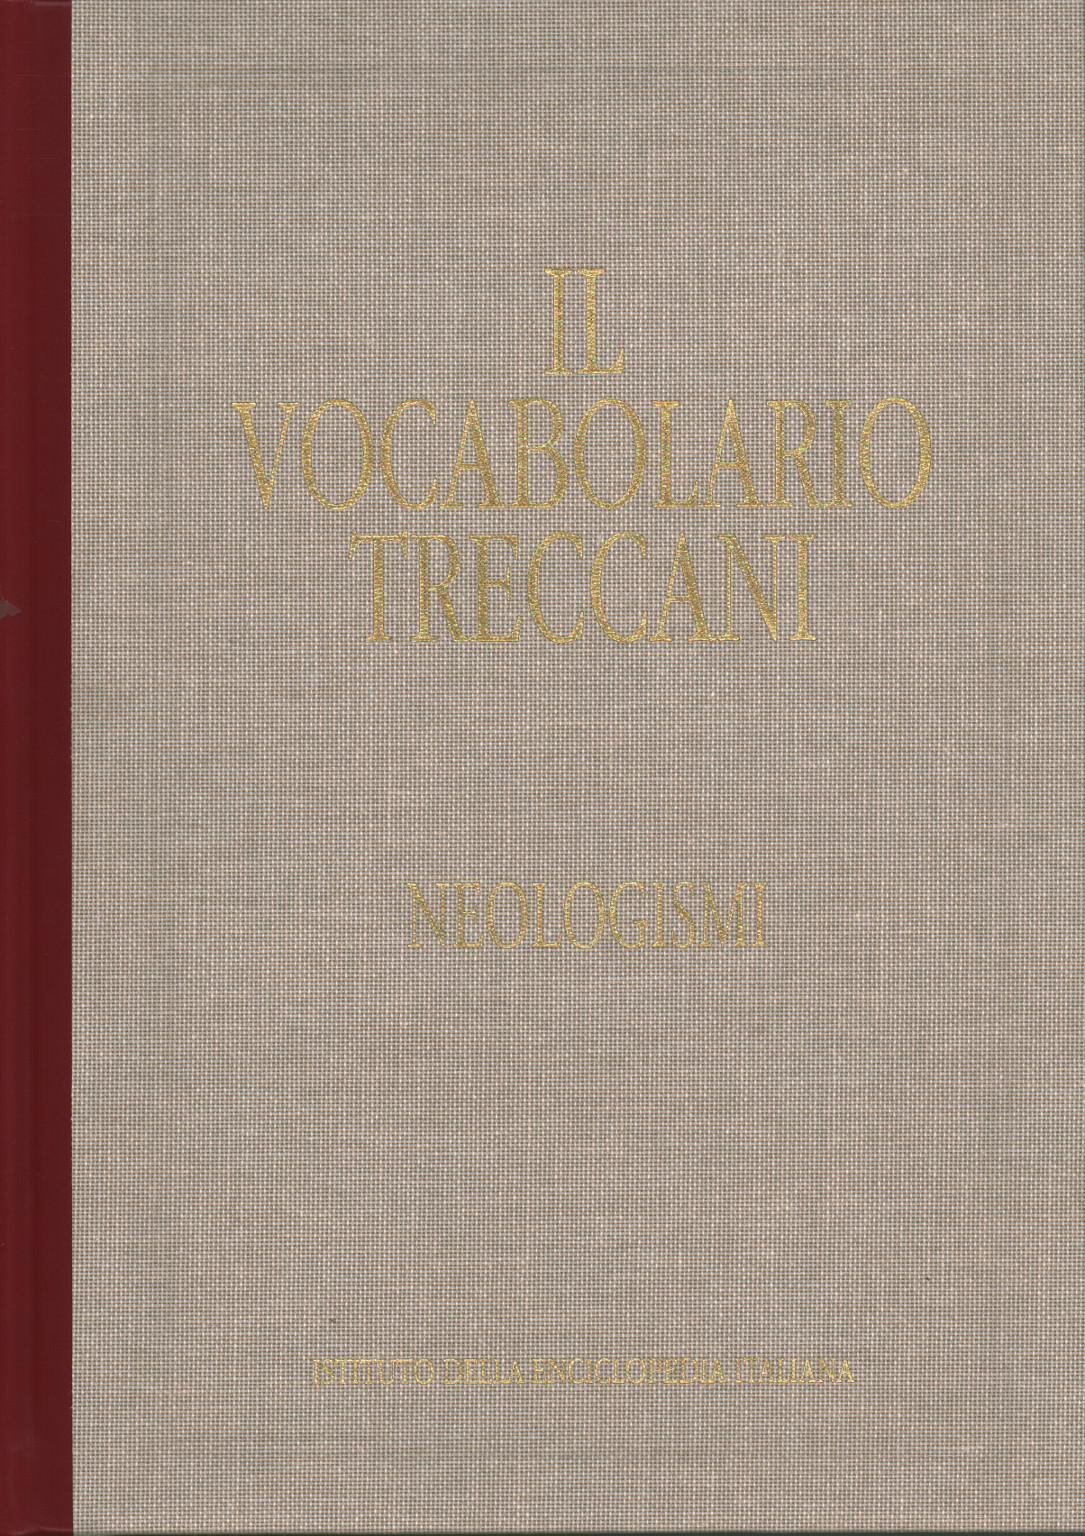 El vocabulario Treccani. Neologismos. Palabra